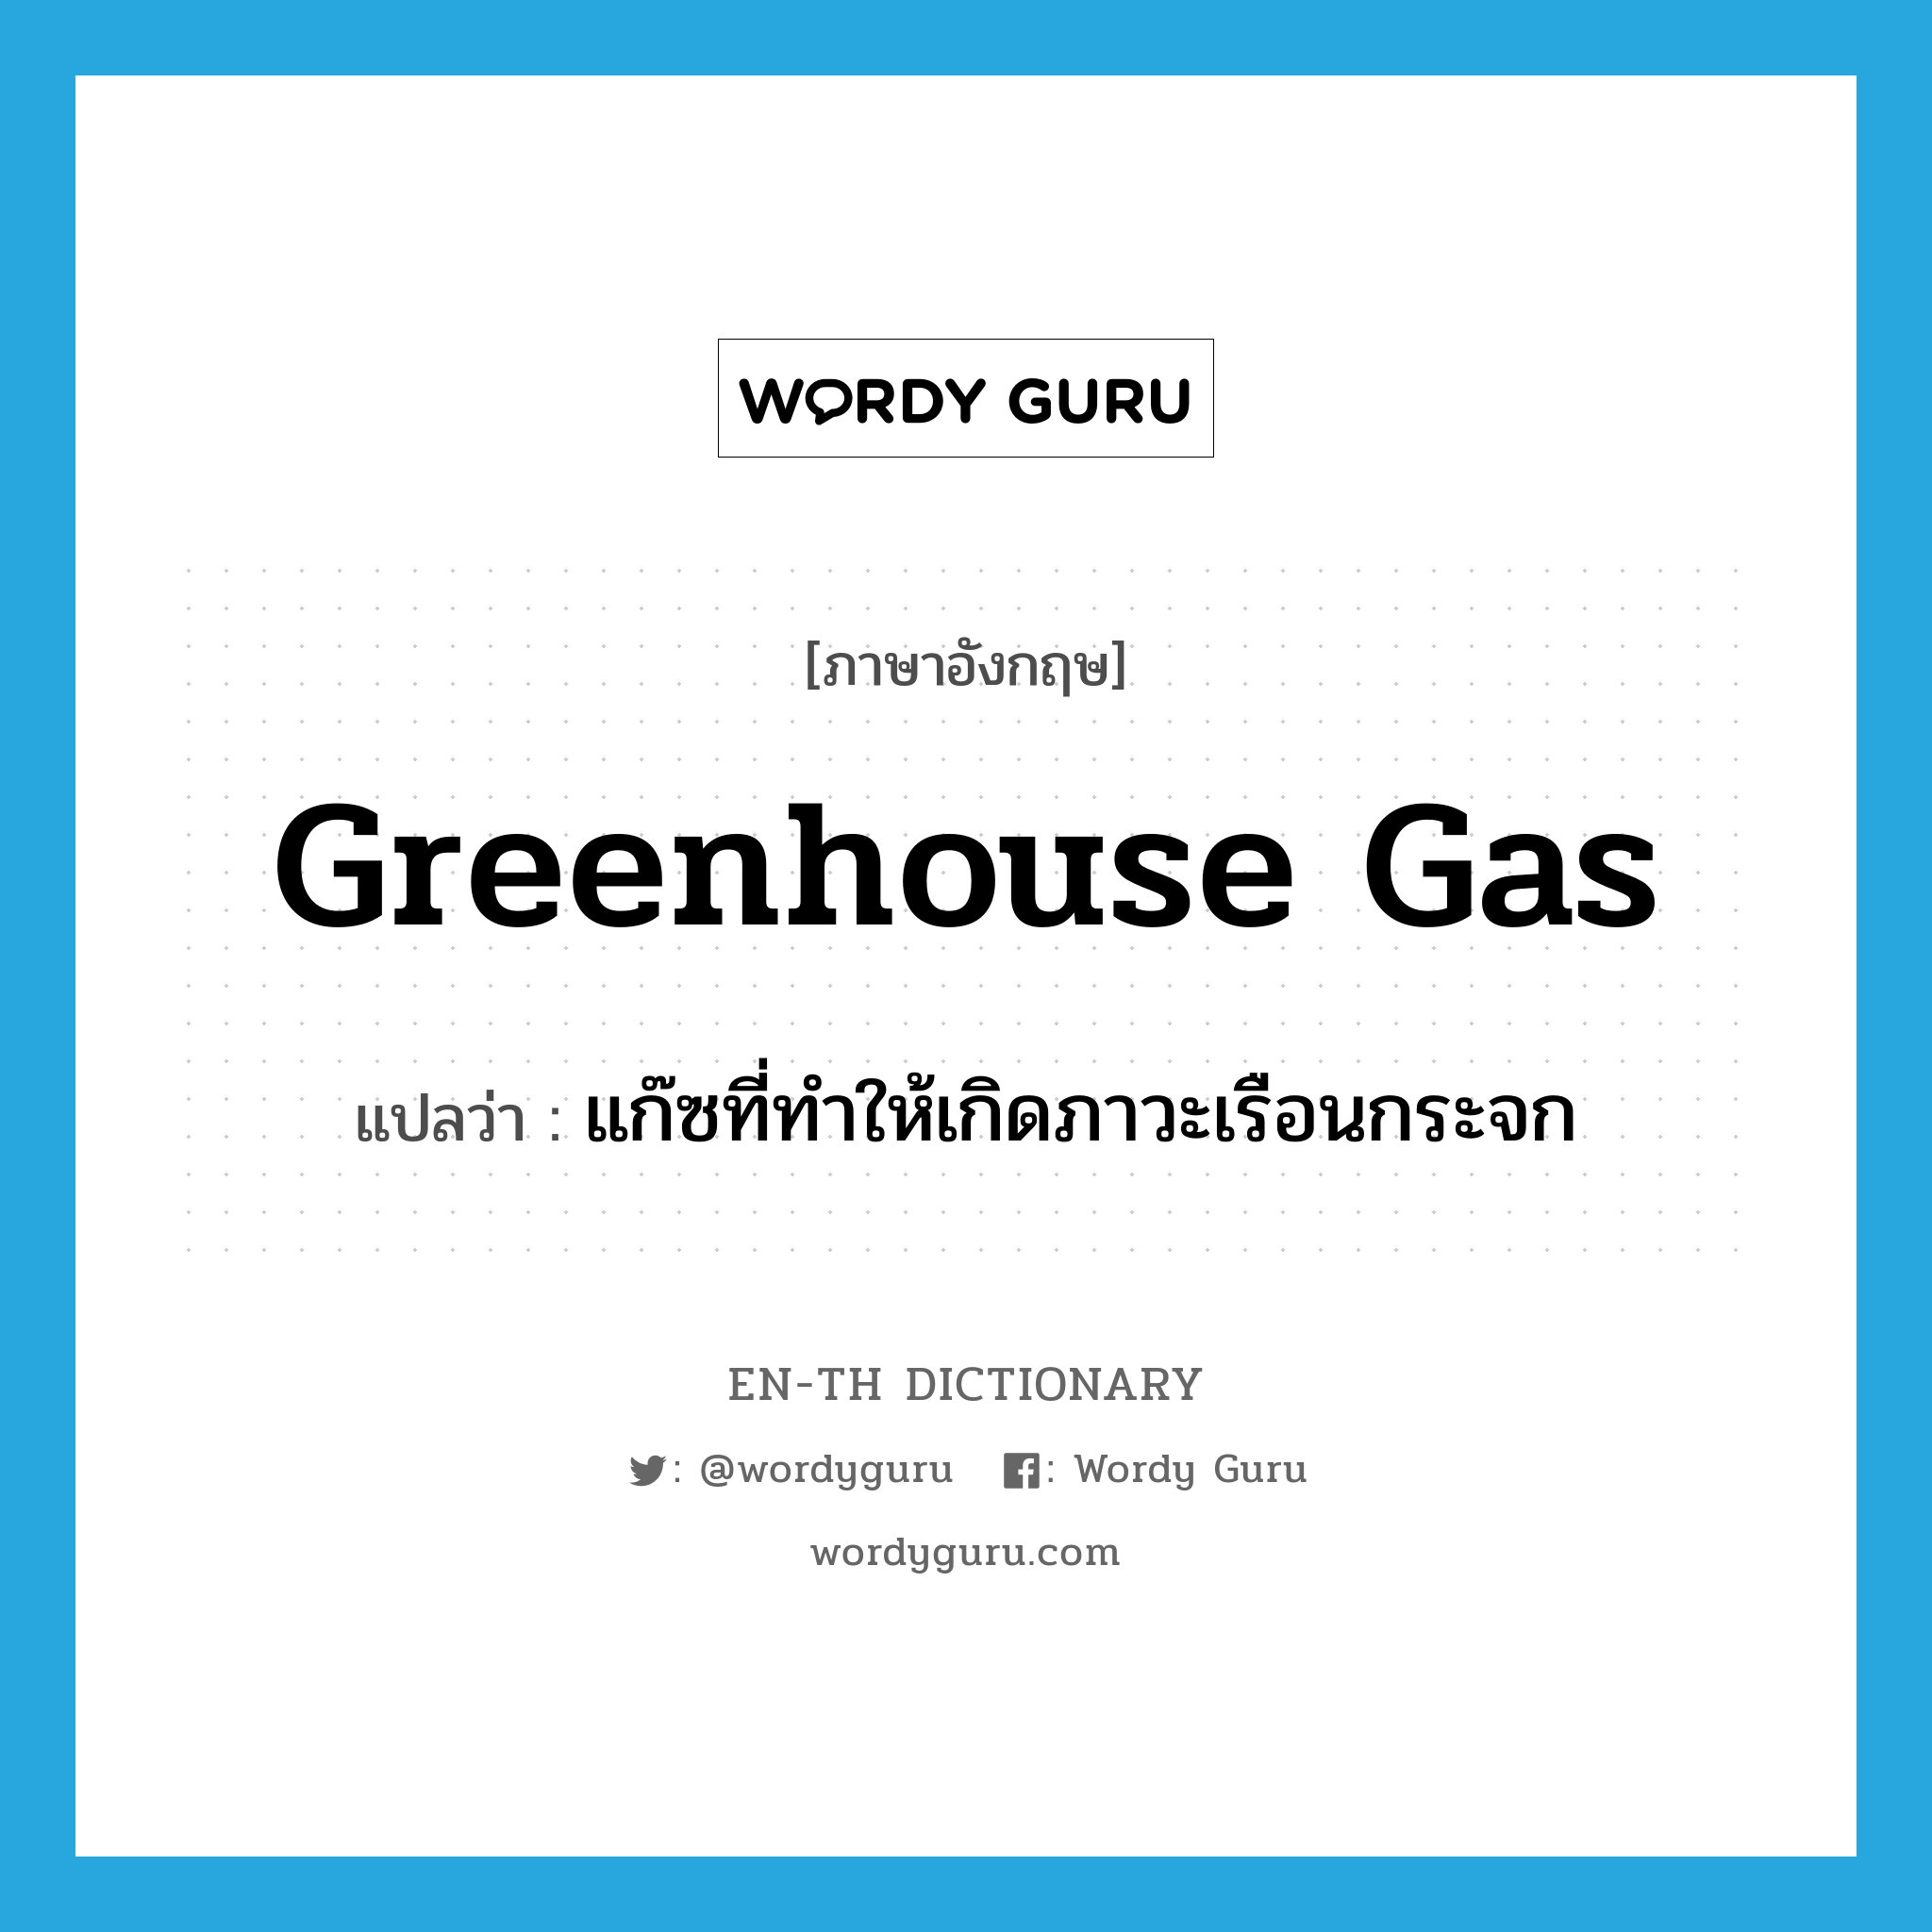 greenhouse gas แปลว่า?, คำศัพท์ภาษาอังกฤษ greenhouse gas แปลว่า แก๊ซที่ทำให้เกิดภาวะเรือนกระจก ประเภท N หมวด N